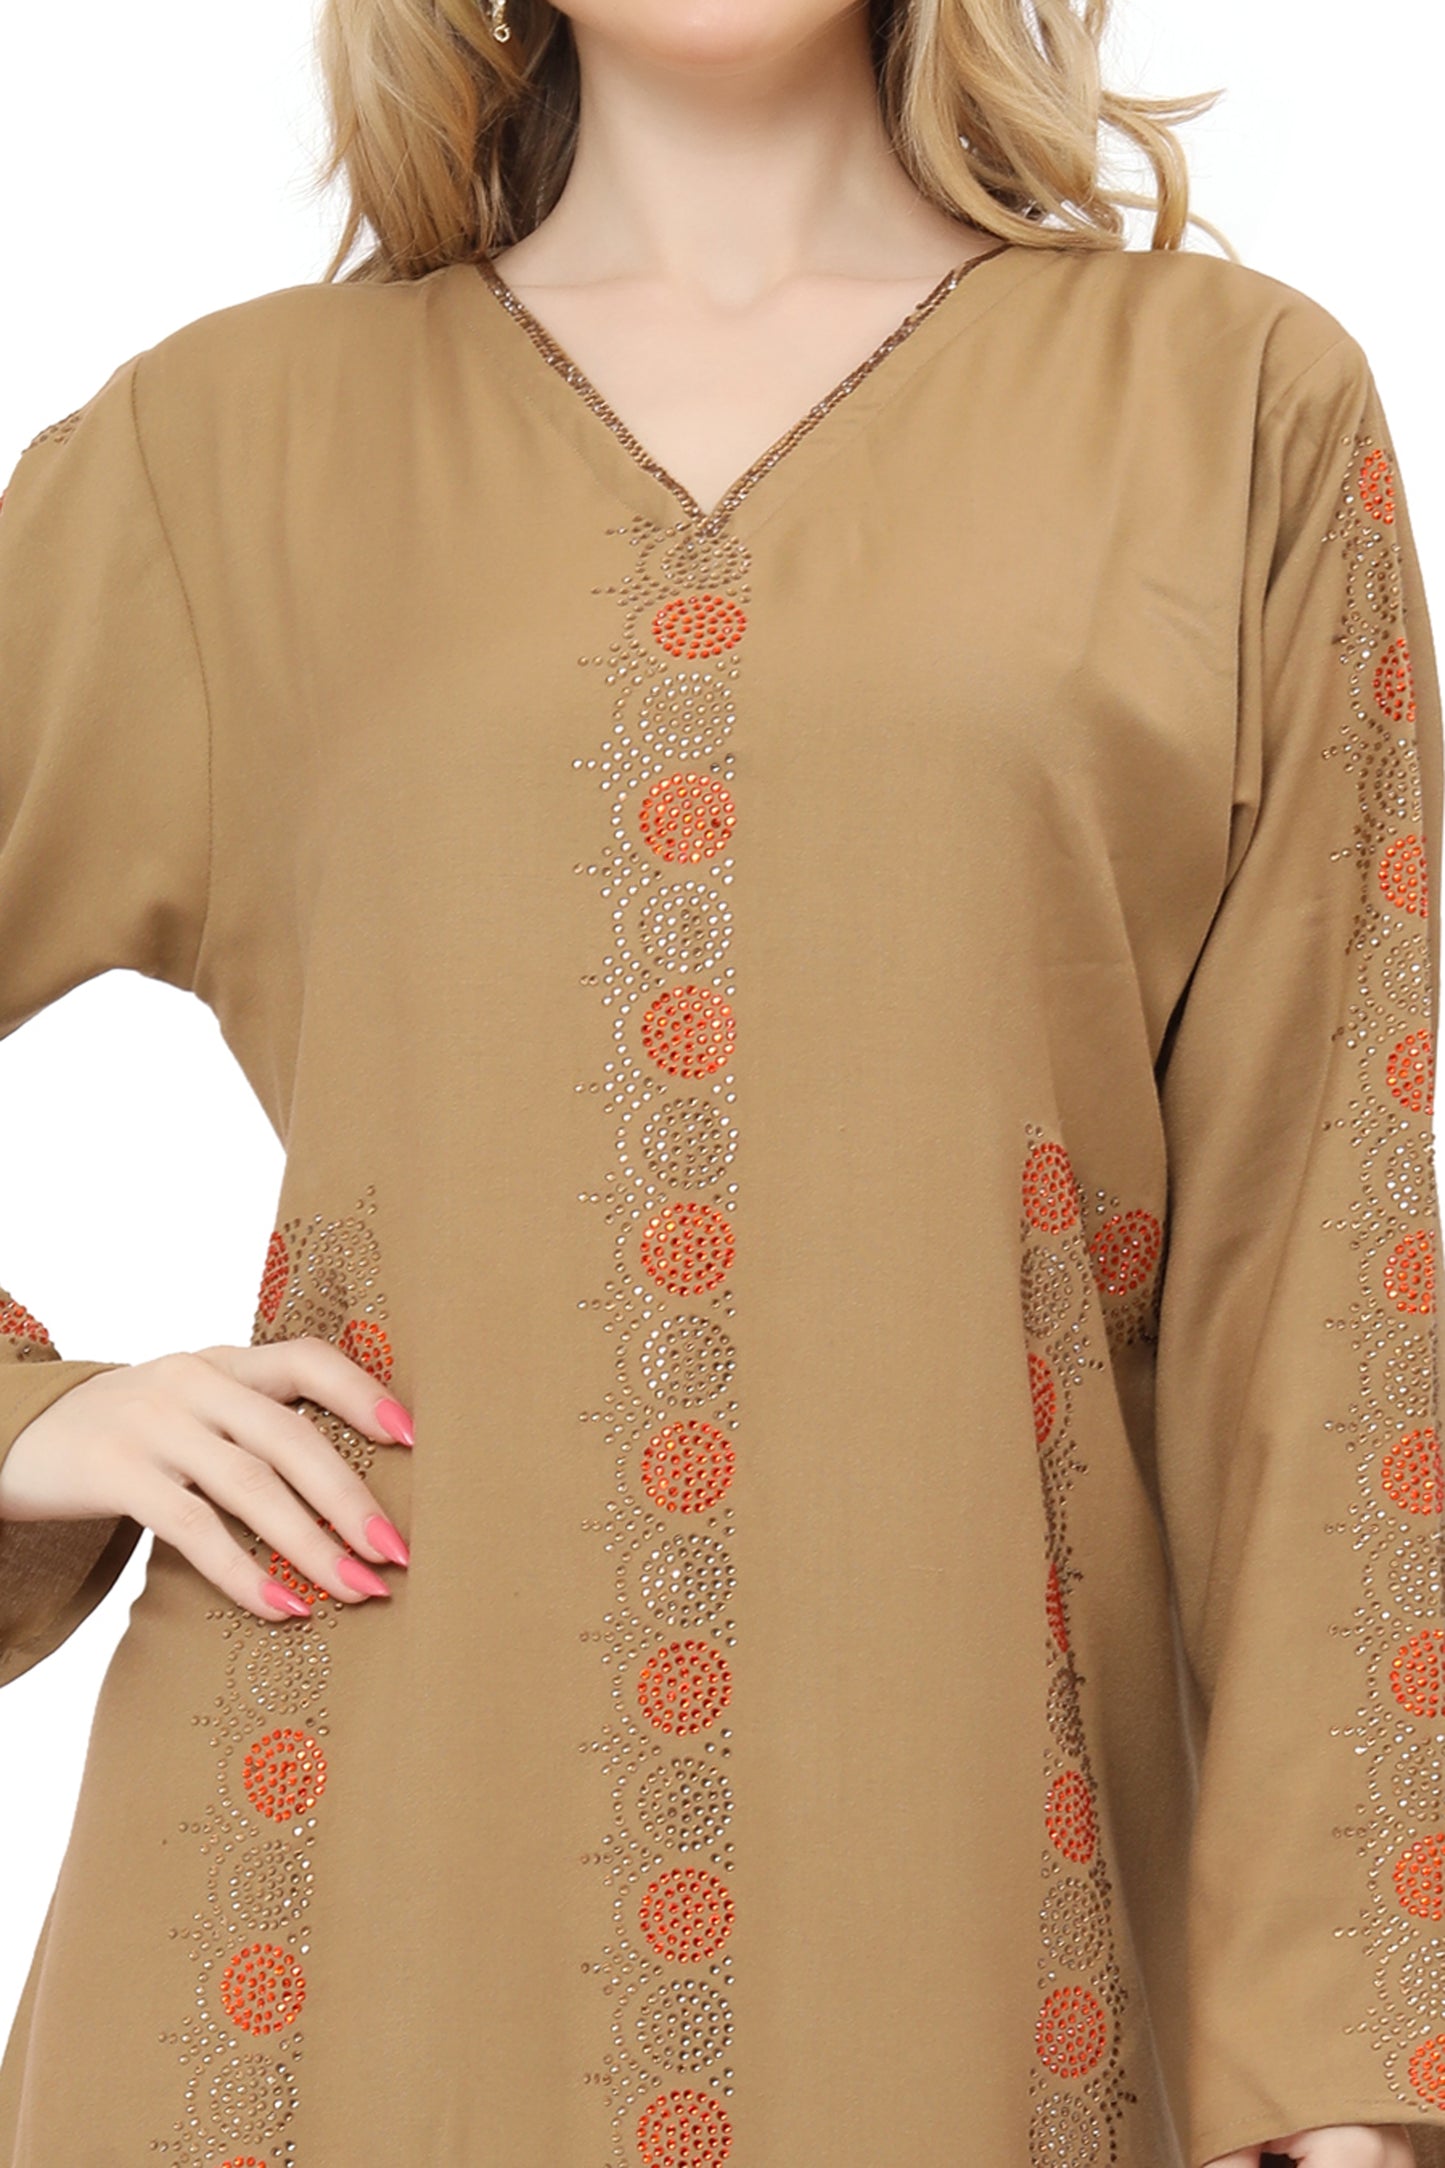 Designer Arabian Kaftan Dress For Women